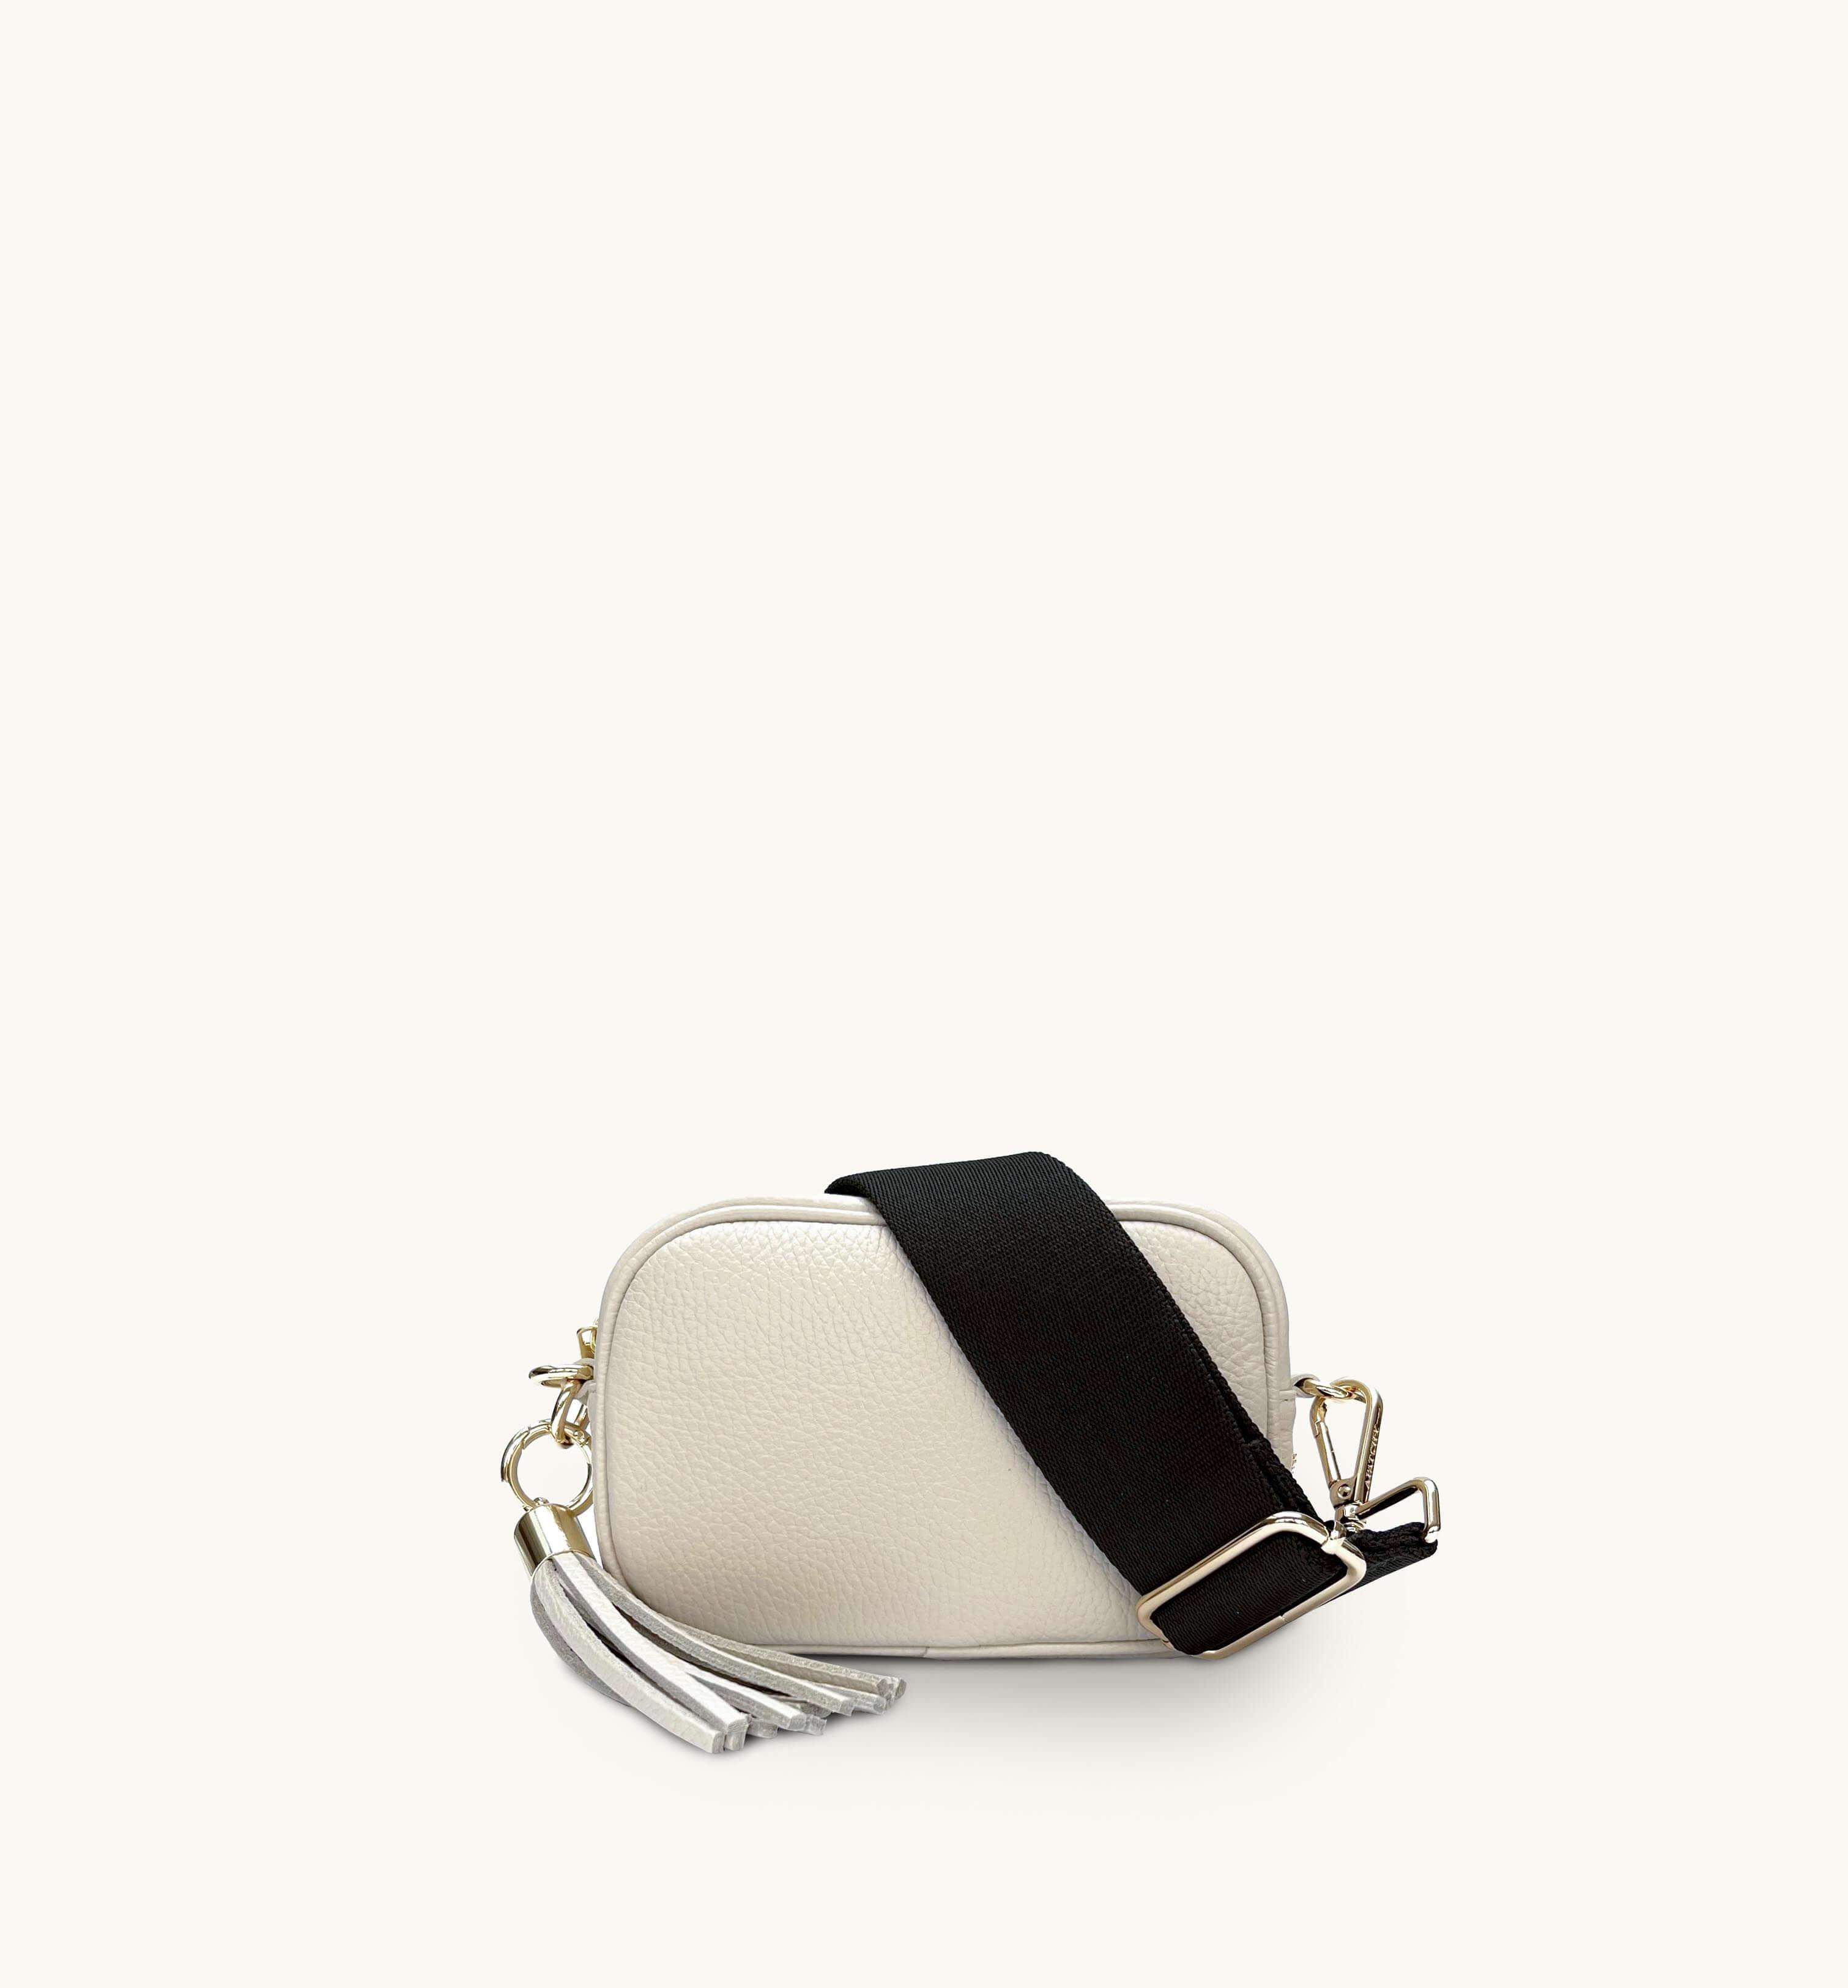 цена Миниатюрная кожаная сумка для телефона с кисточками и простым ремешком цвета хаки Apatchy London, бежевый